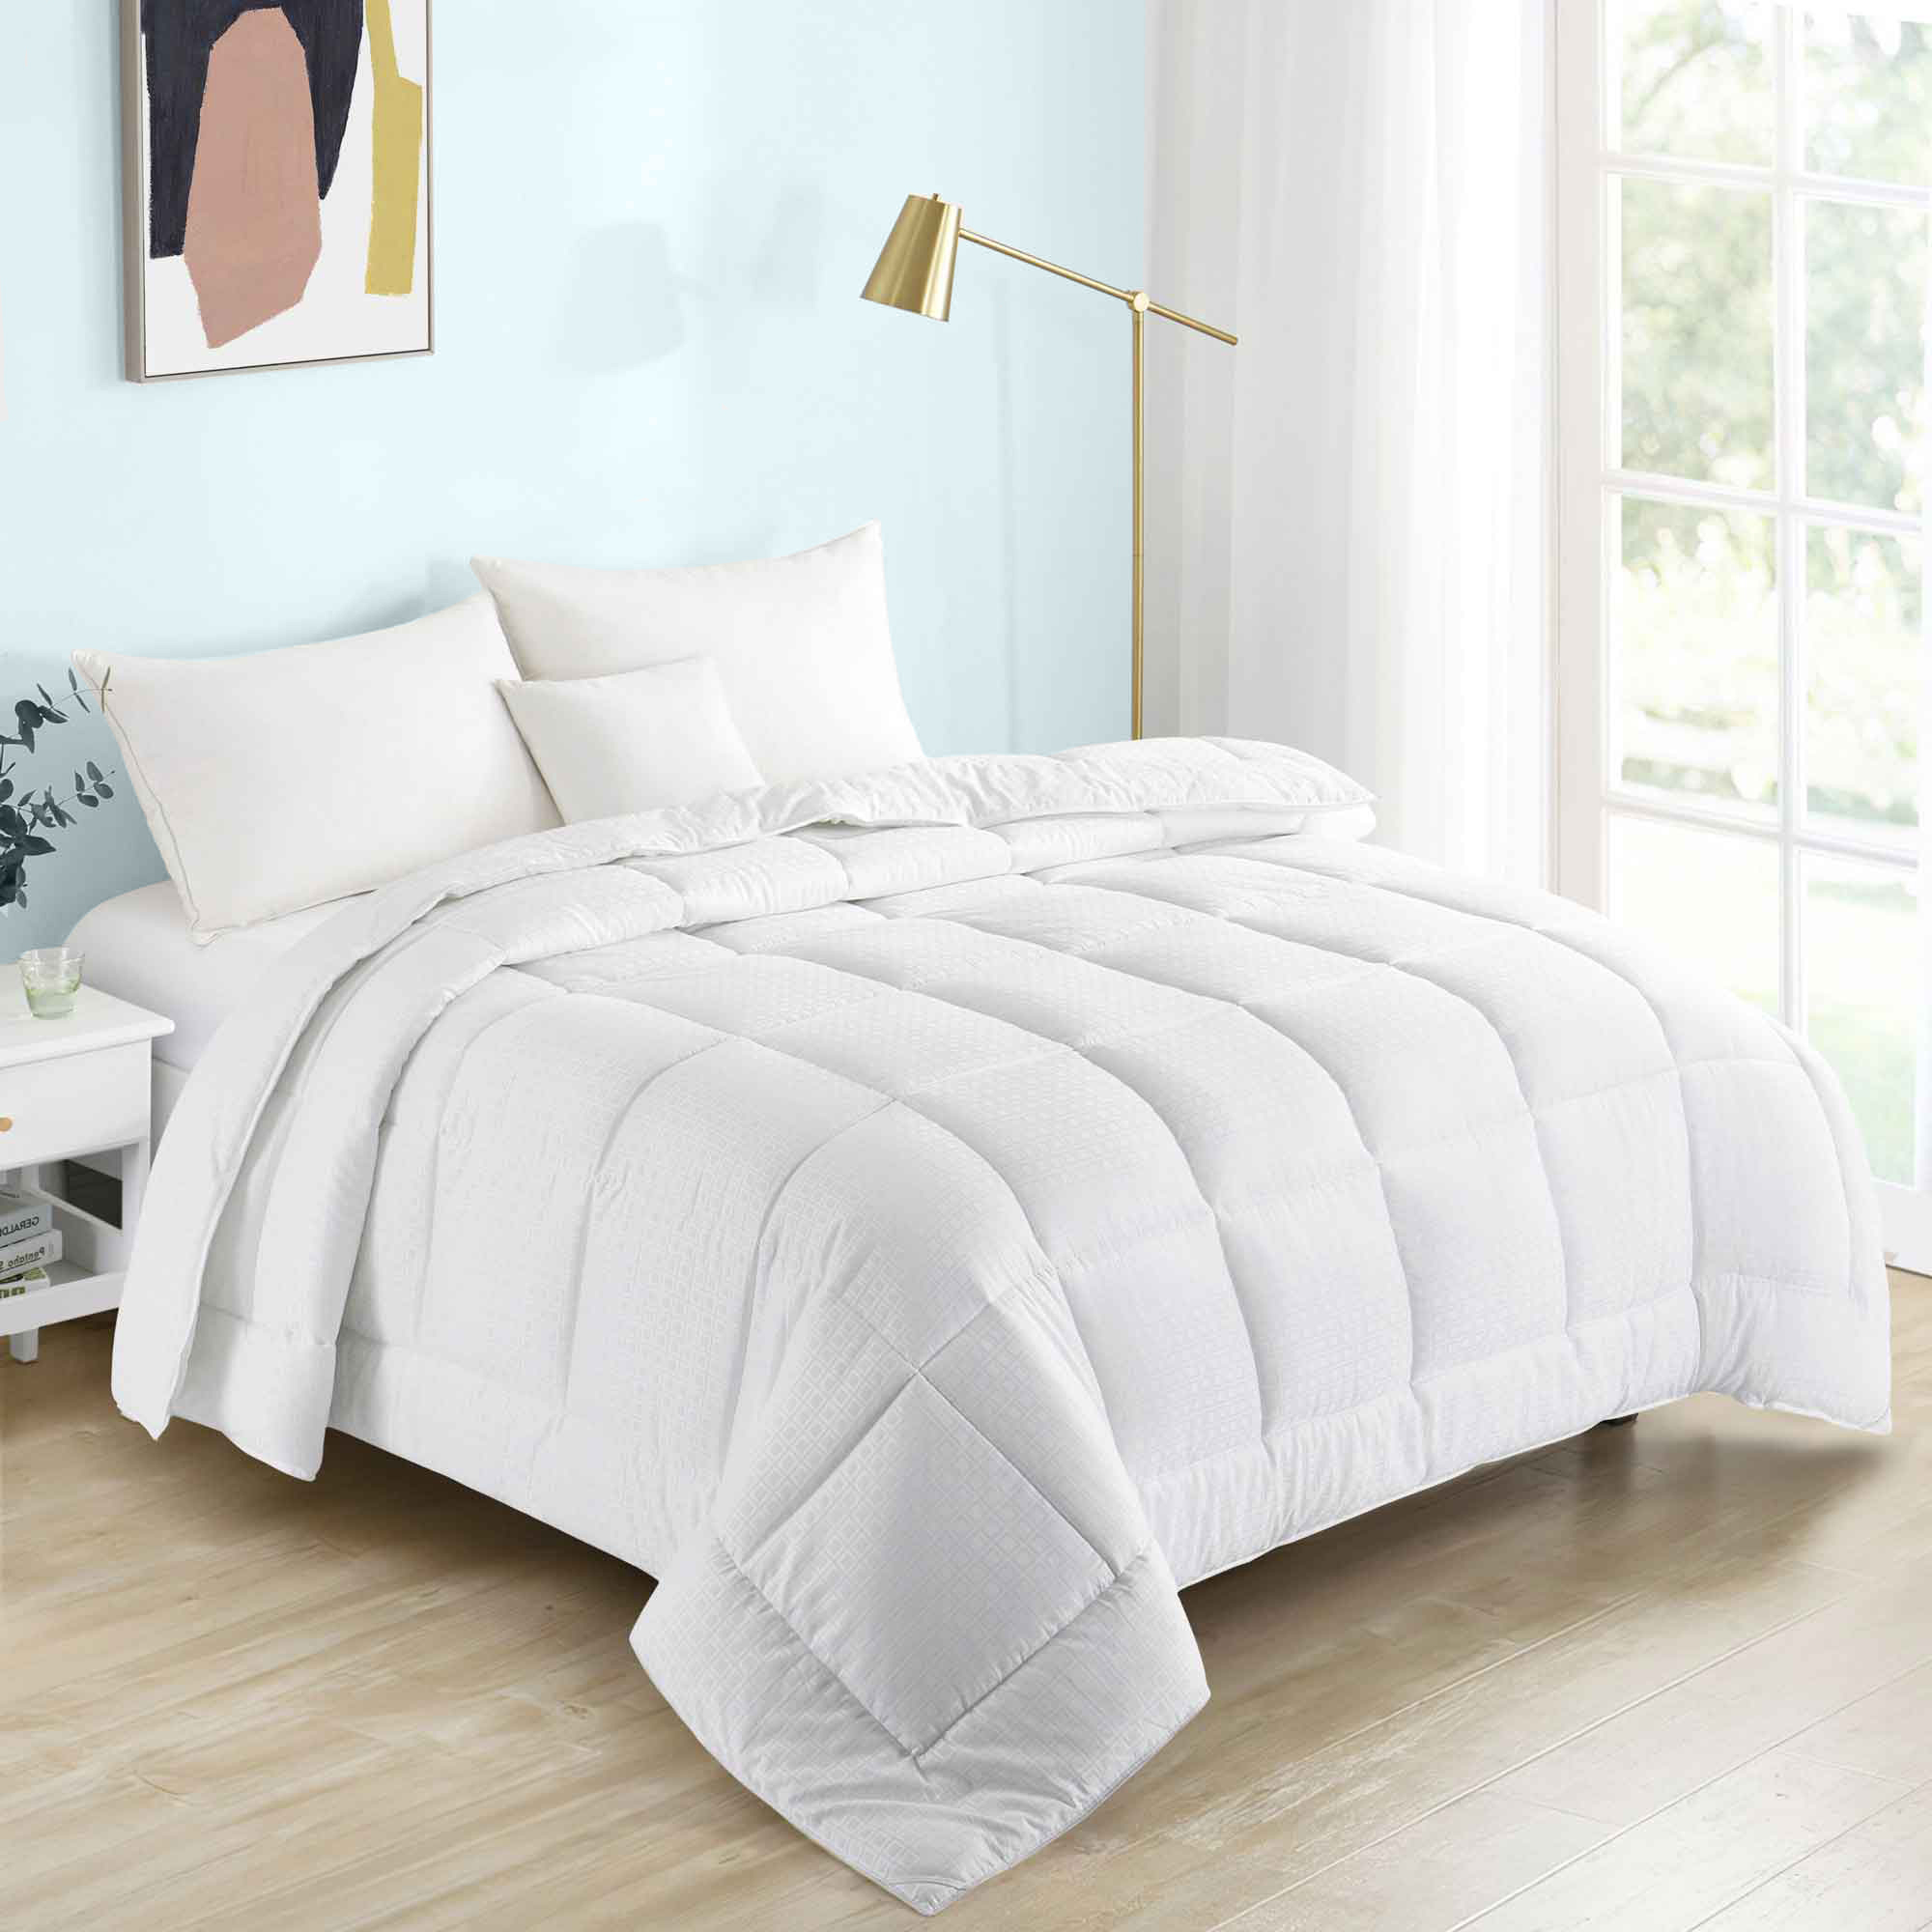 All Seasons Essential Down Alternative Comforter - White, Full